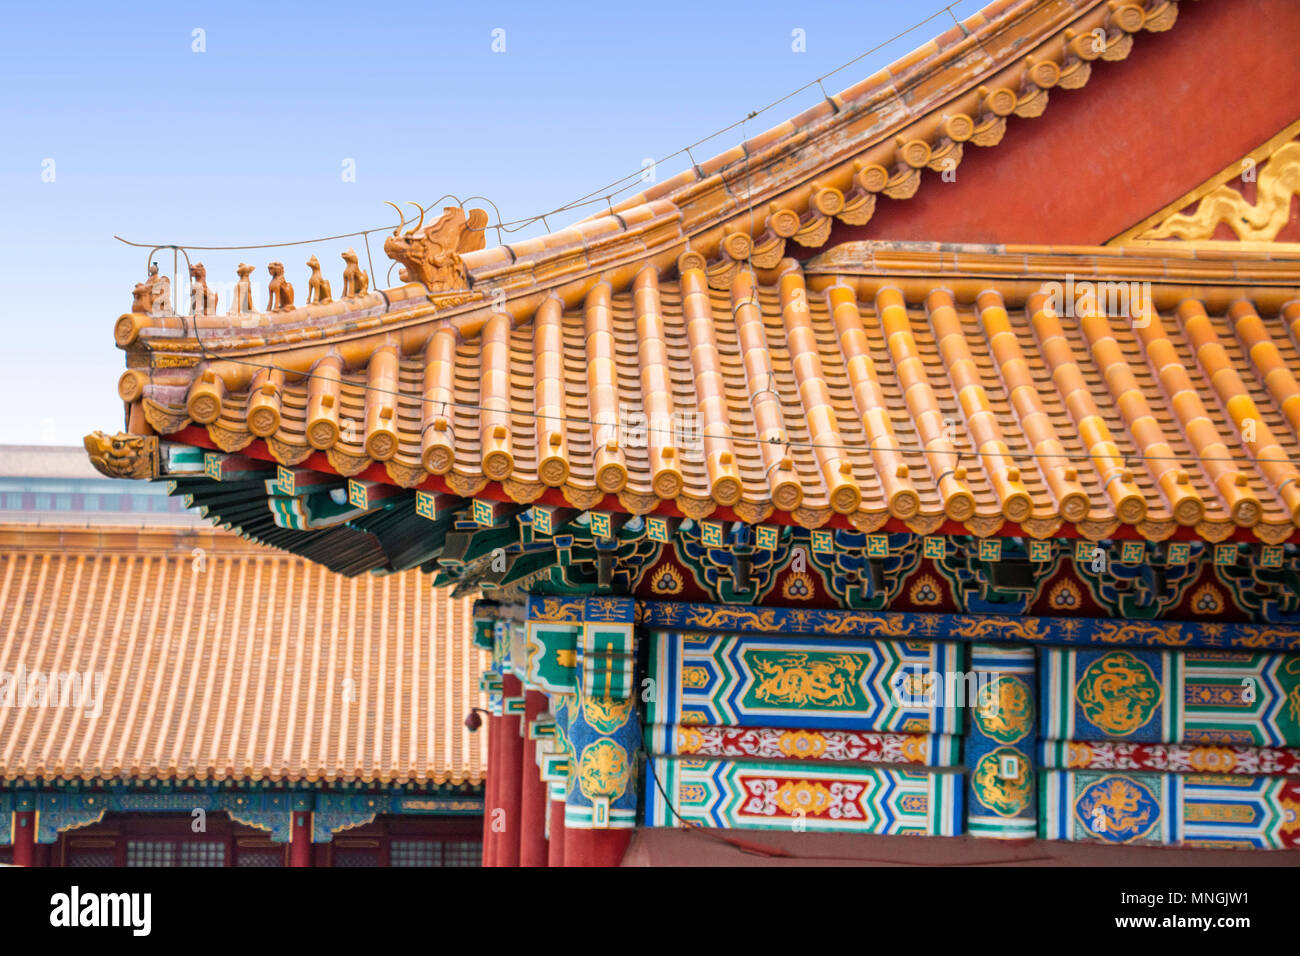 10 bestie crinale sul tetto della Sala della Suprema armonia, Città Proibita, Pechino, Cina. Bestie accovacciate in cinese dalle fiabe cinesi. Foto Stock